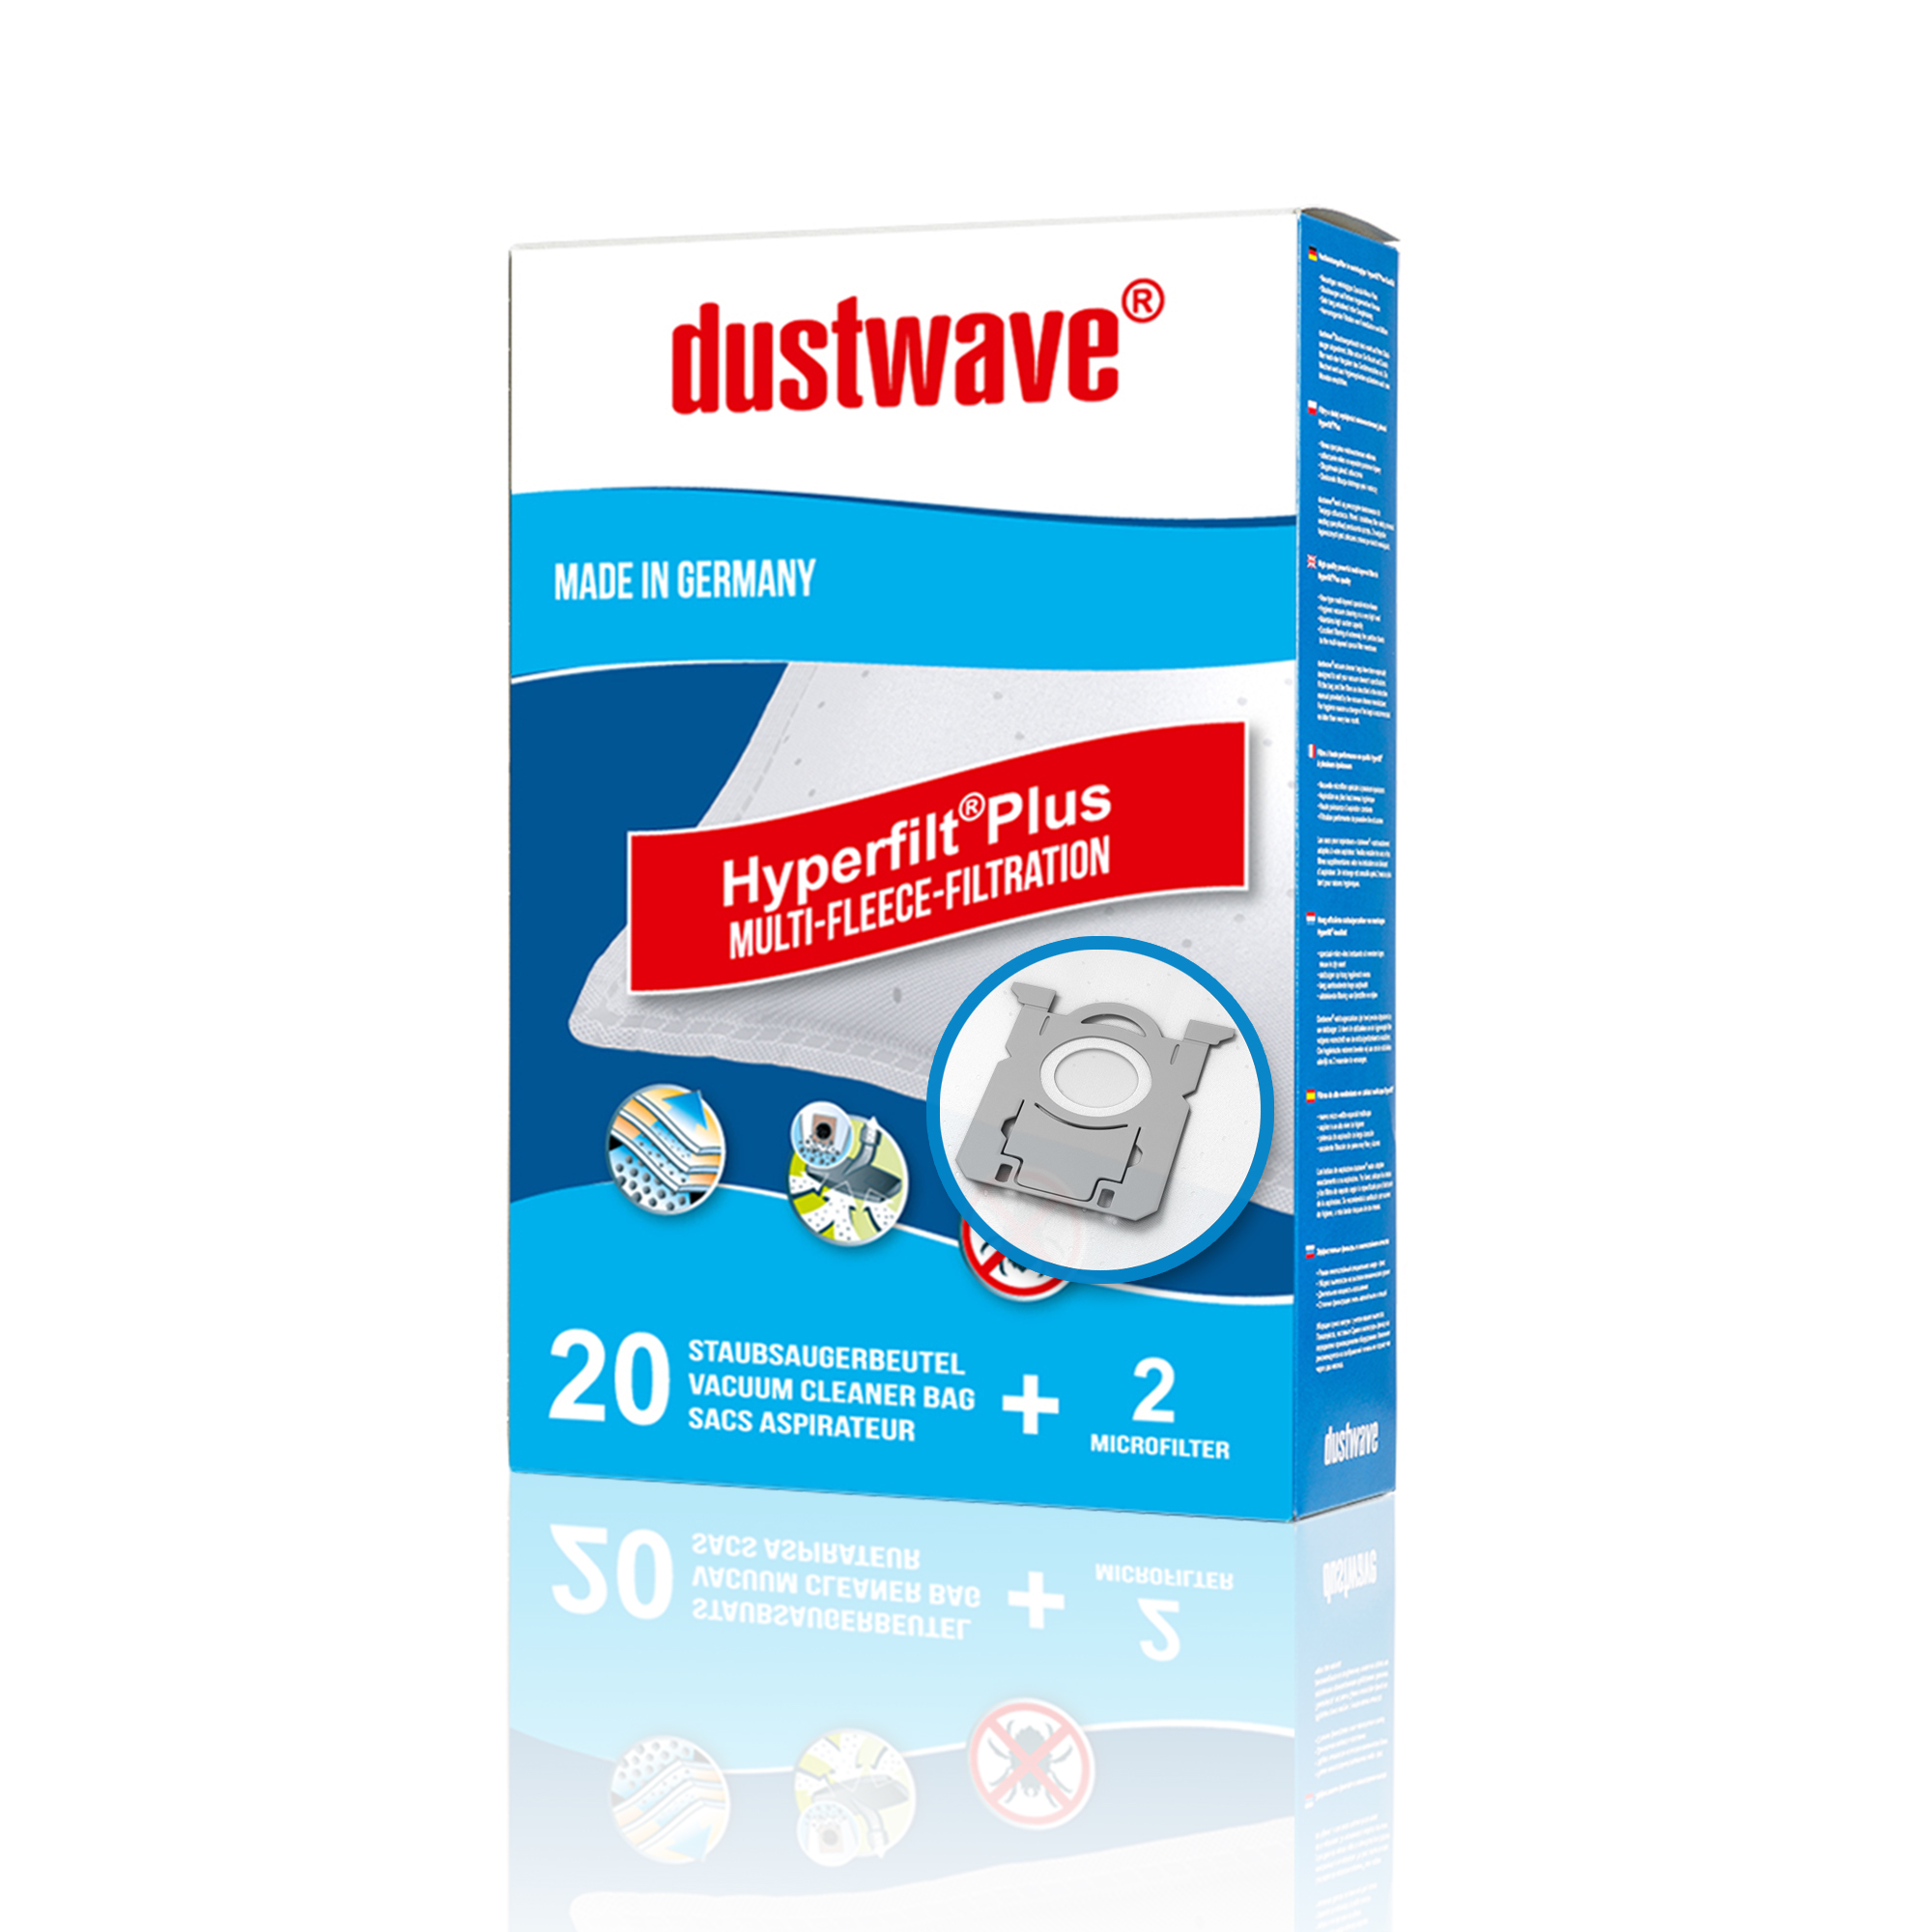 Dustwave® Premium 20 Staubsaugerbeutel für AEG APF6130 / Powerforce 77 - hocheffizient mit Hygieneverschluss - Made in Germany